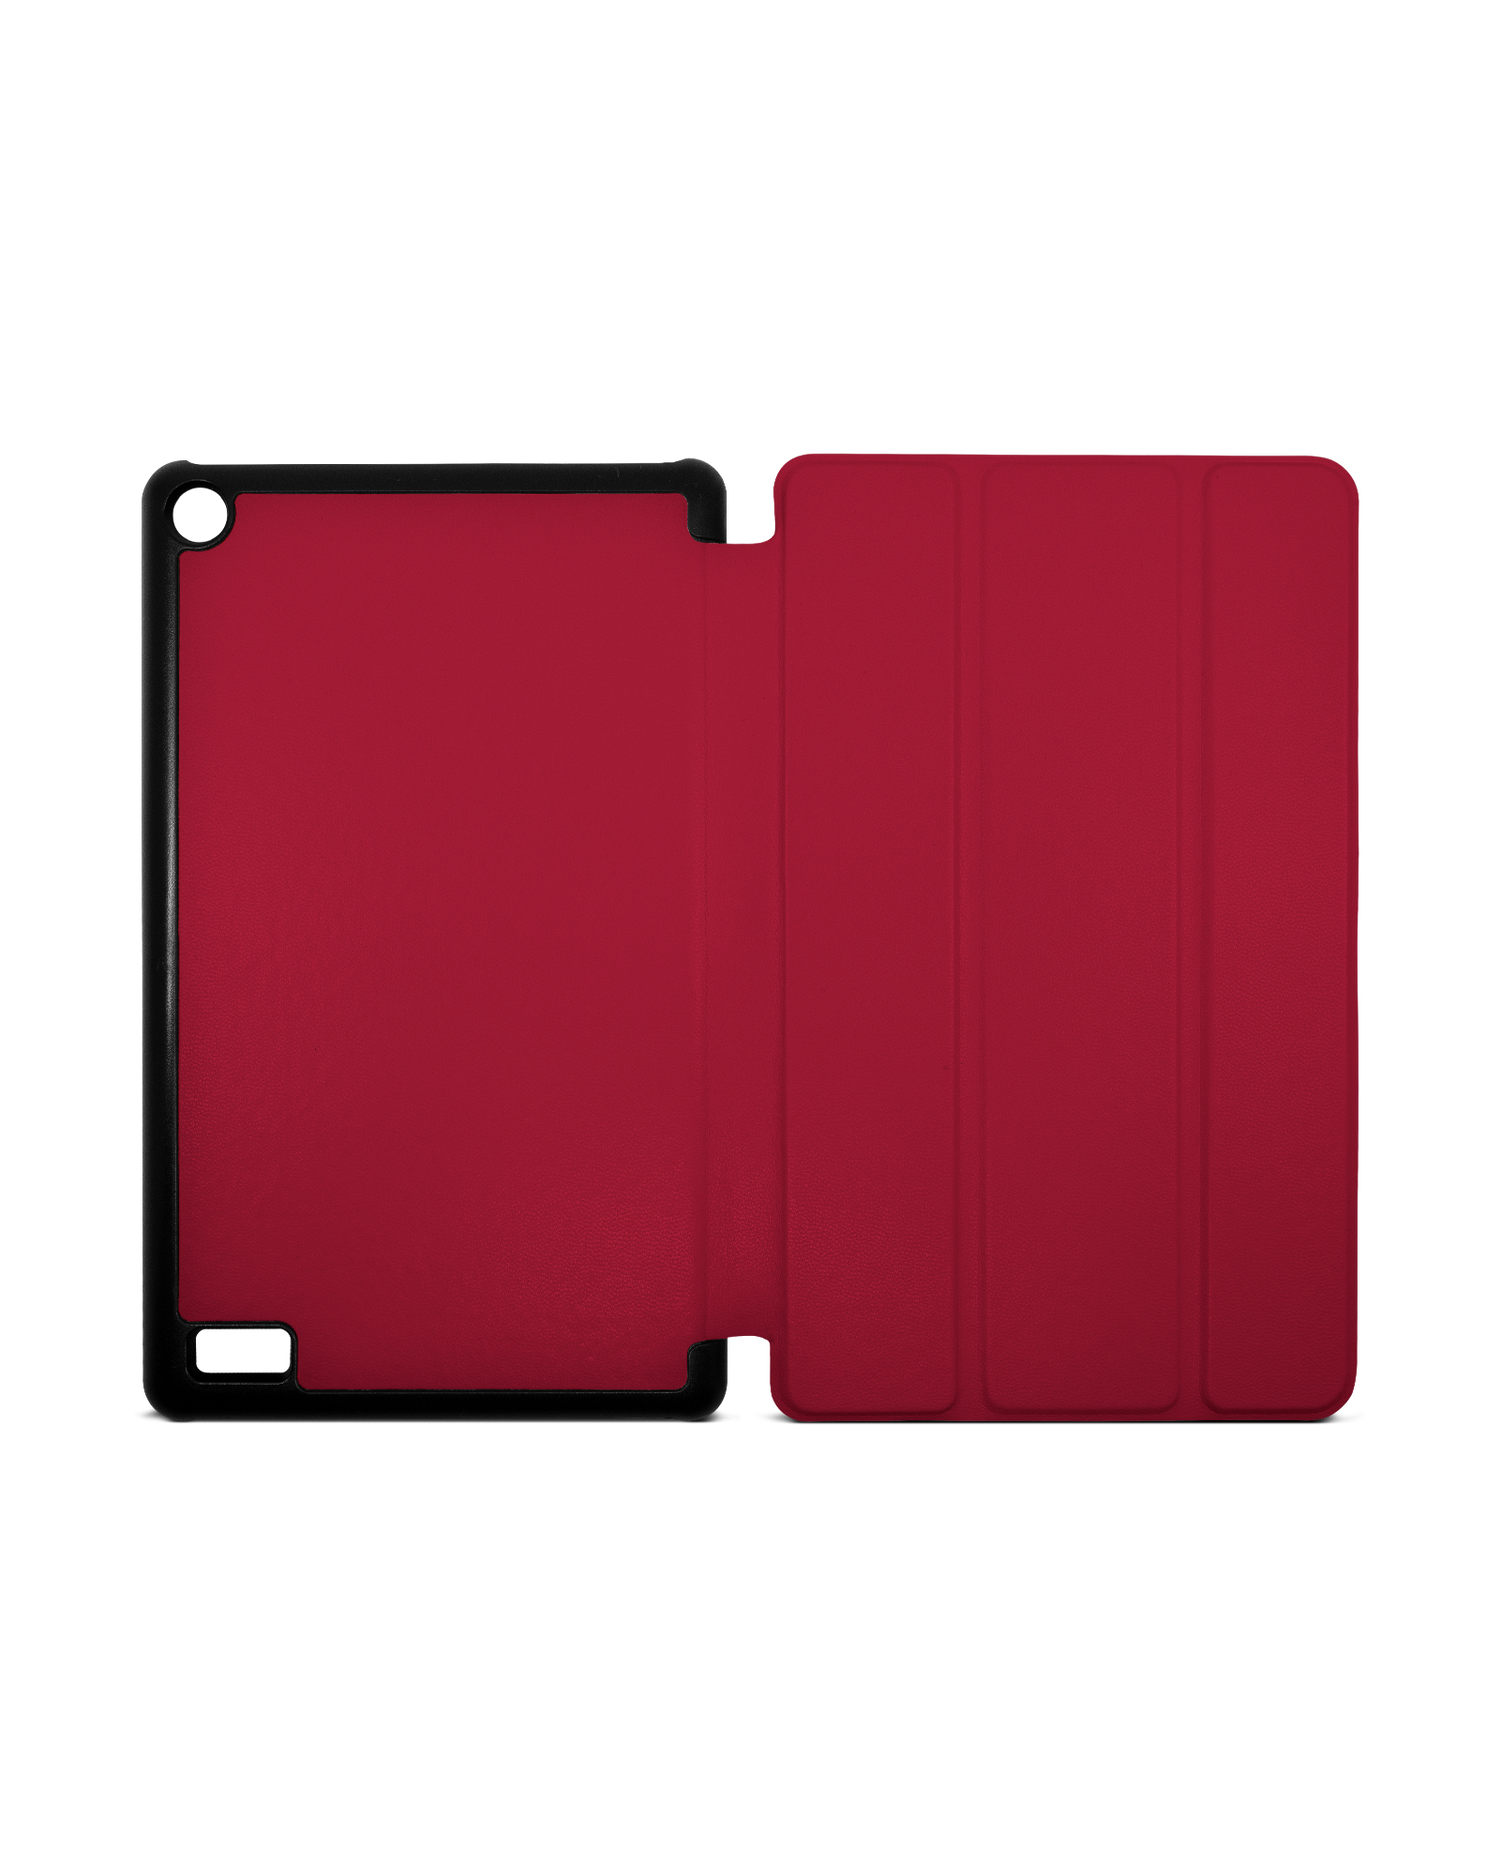 RED Tablet Smart Case für Amazon Fire 7: Aufgeklappt